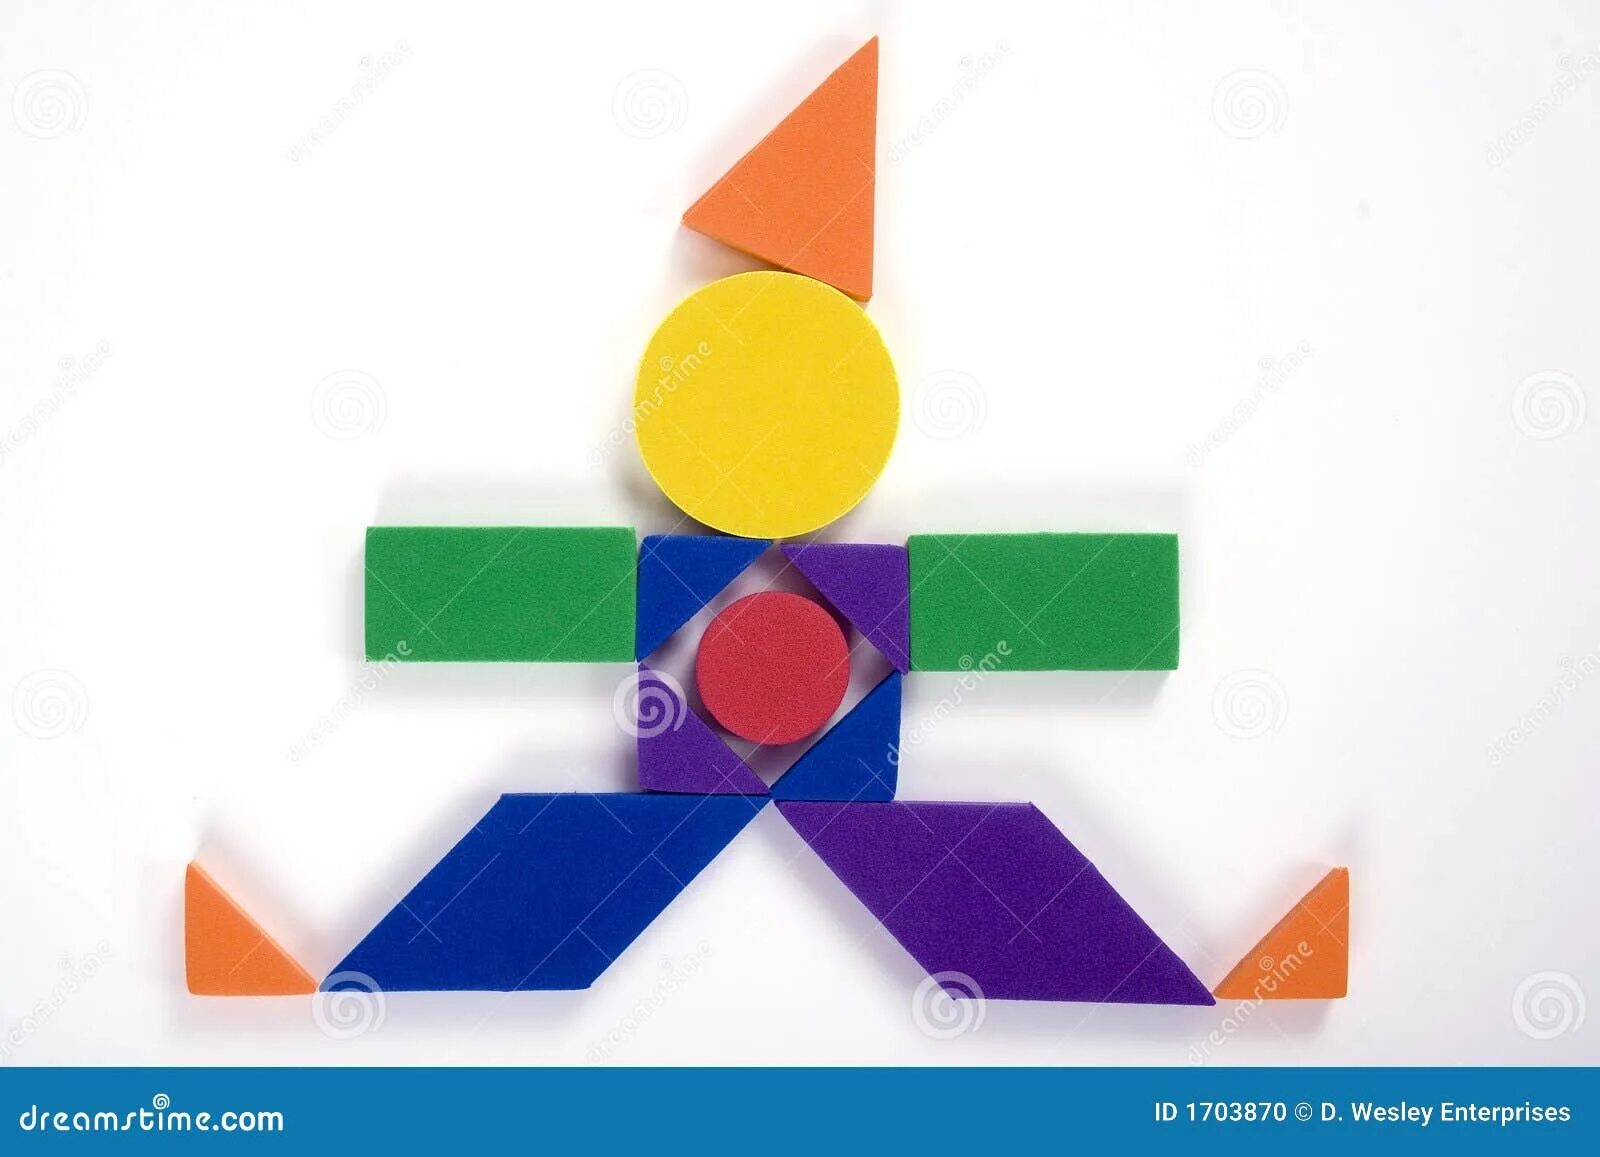 Геометрические клоуны. Клоун геометрическими фигурами. Фигура клоуна из геометрических фигур. Аппликация клоун из геометрических фигур. Клоун из геометрических фигур для детей средней группы.